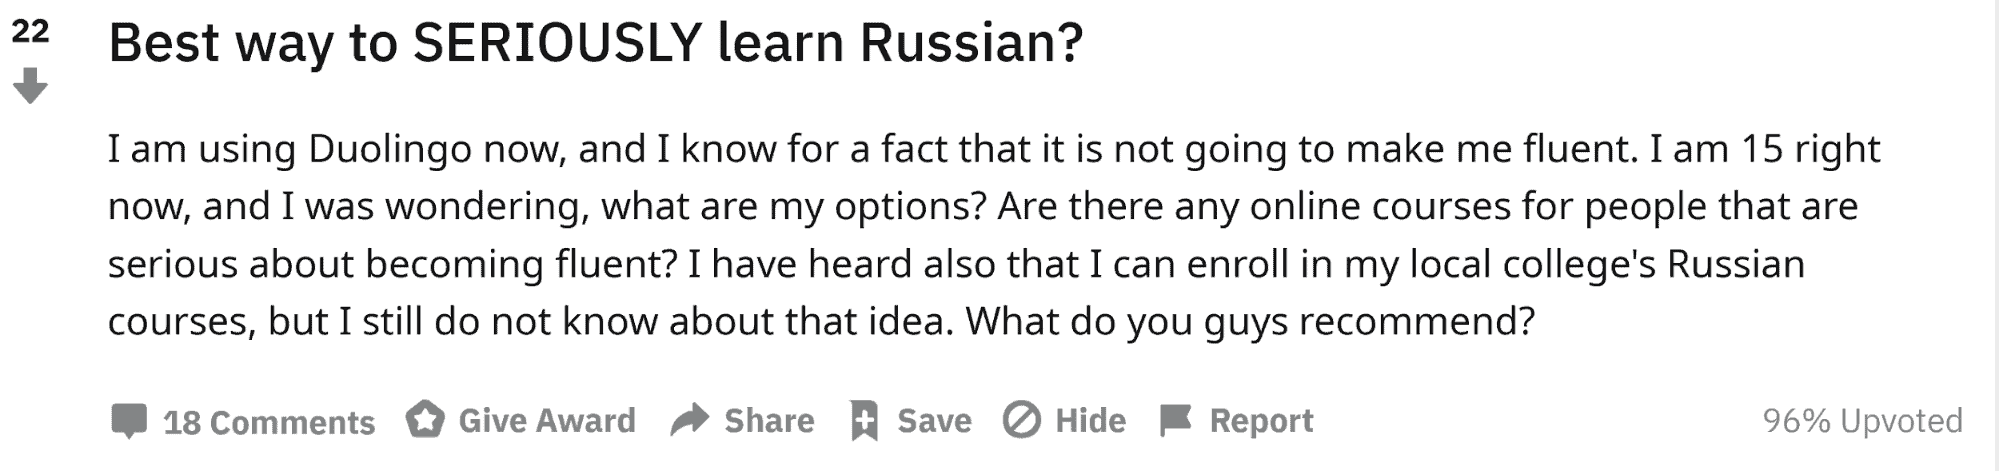 best way to learn Russian reddit